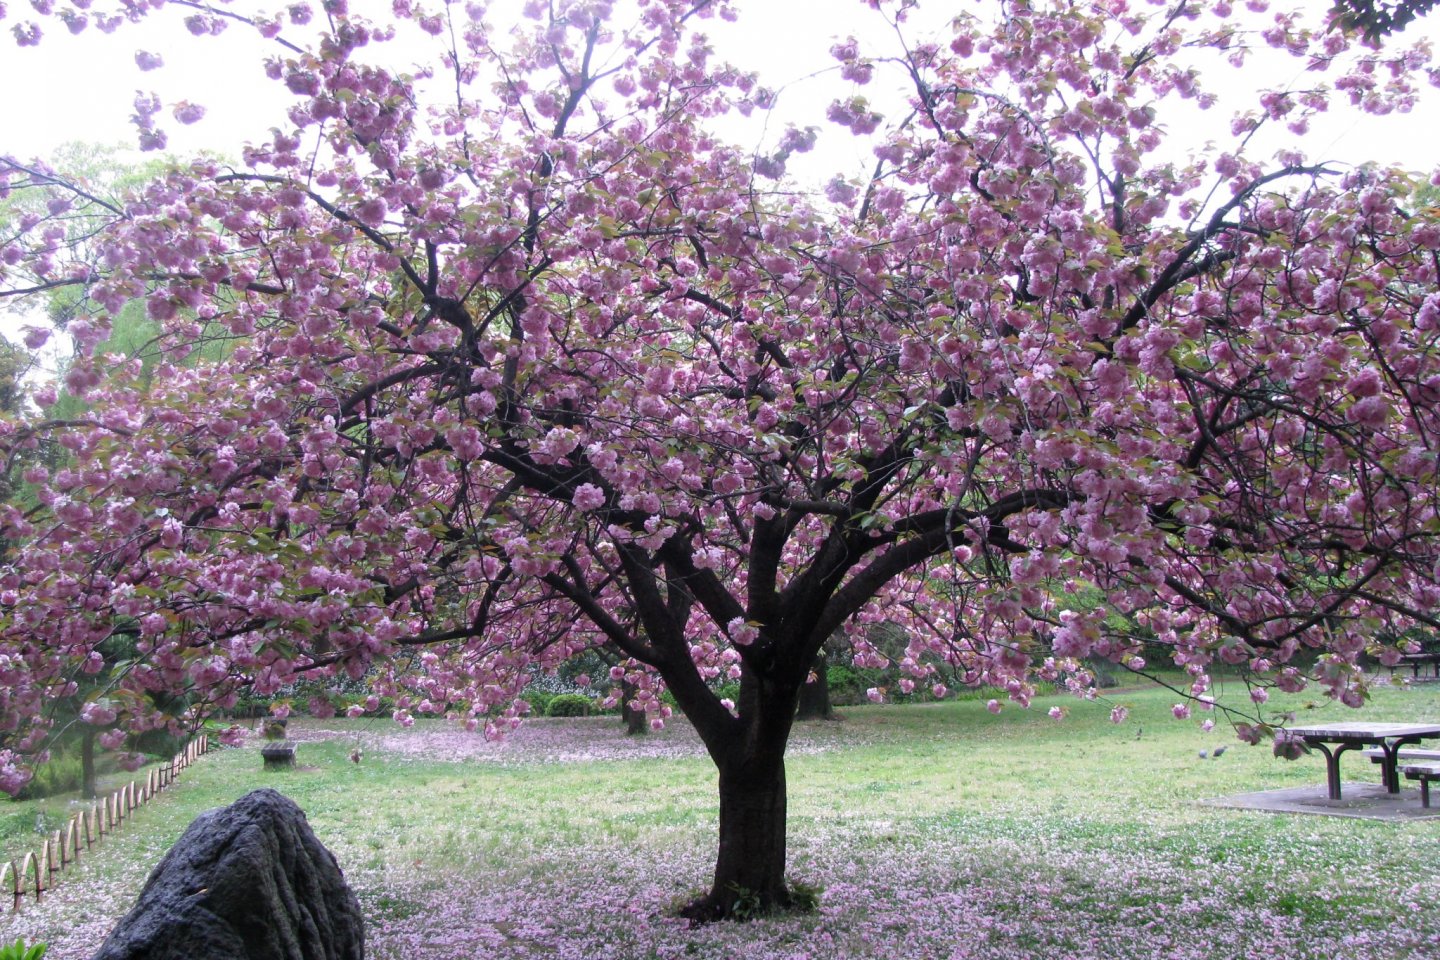 The transience of sakura blooming